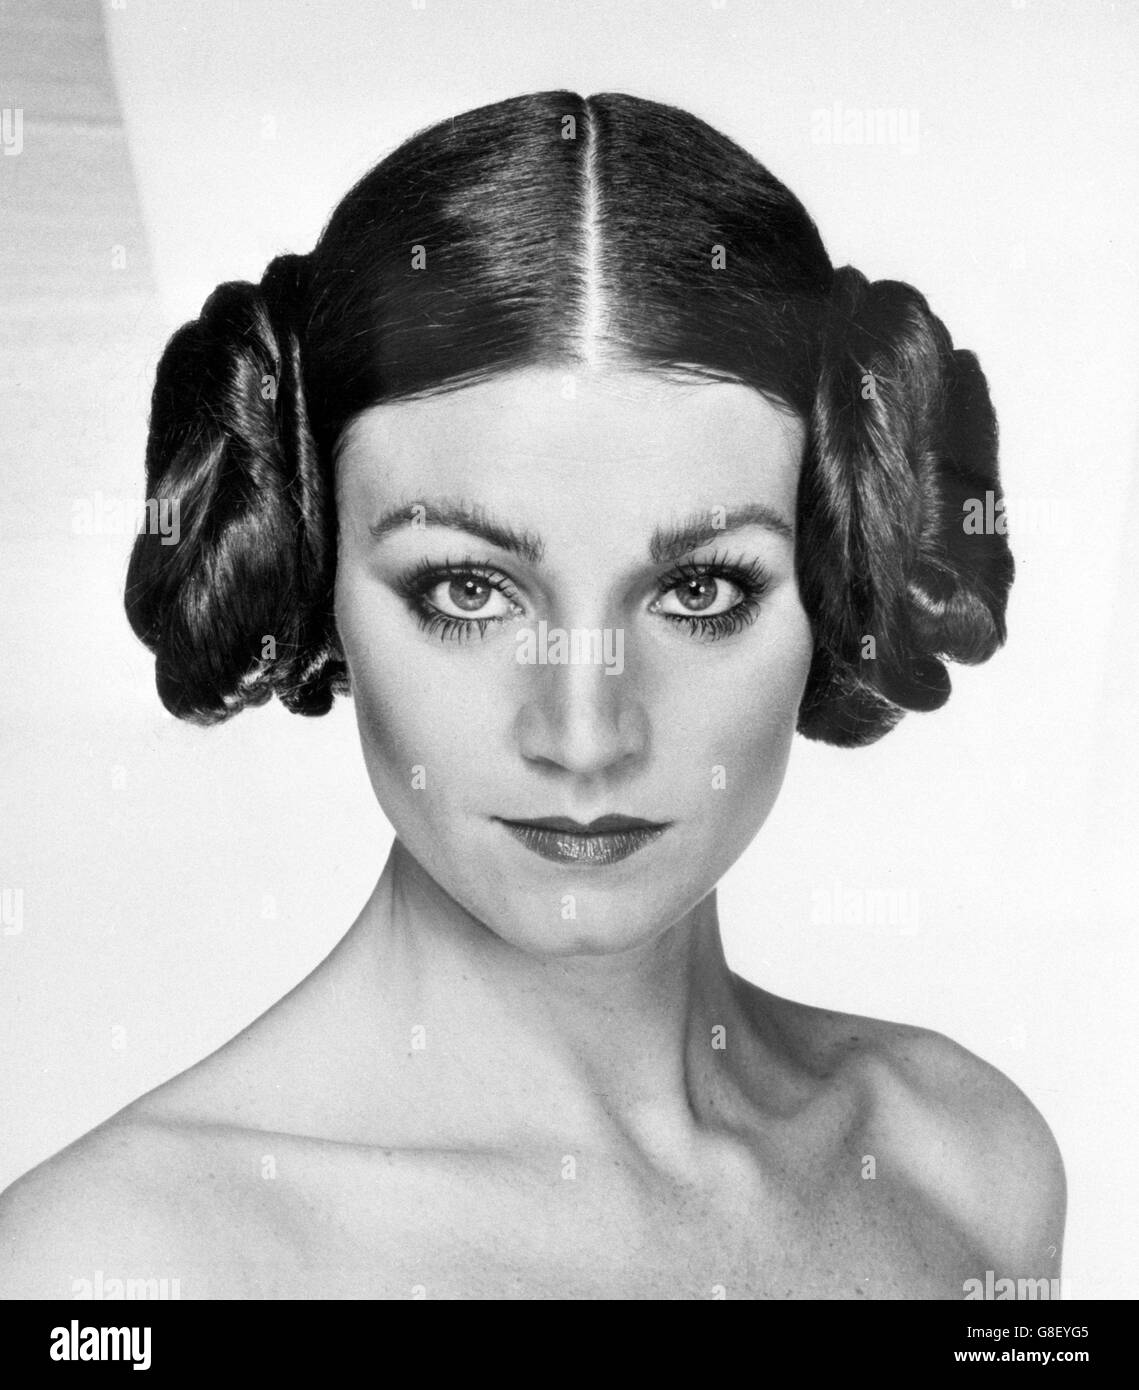 La nouvelle de SunSilk à la coiffure portée par Carrie Fisher à Hollywood dans le film de science-fiction « Star Wars ».Le style a été créé par le coiffeur Nicholas French. Banque D'Images